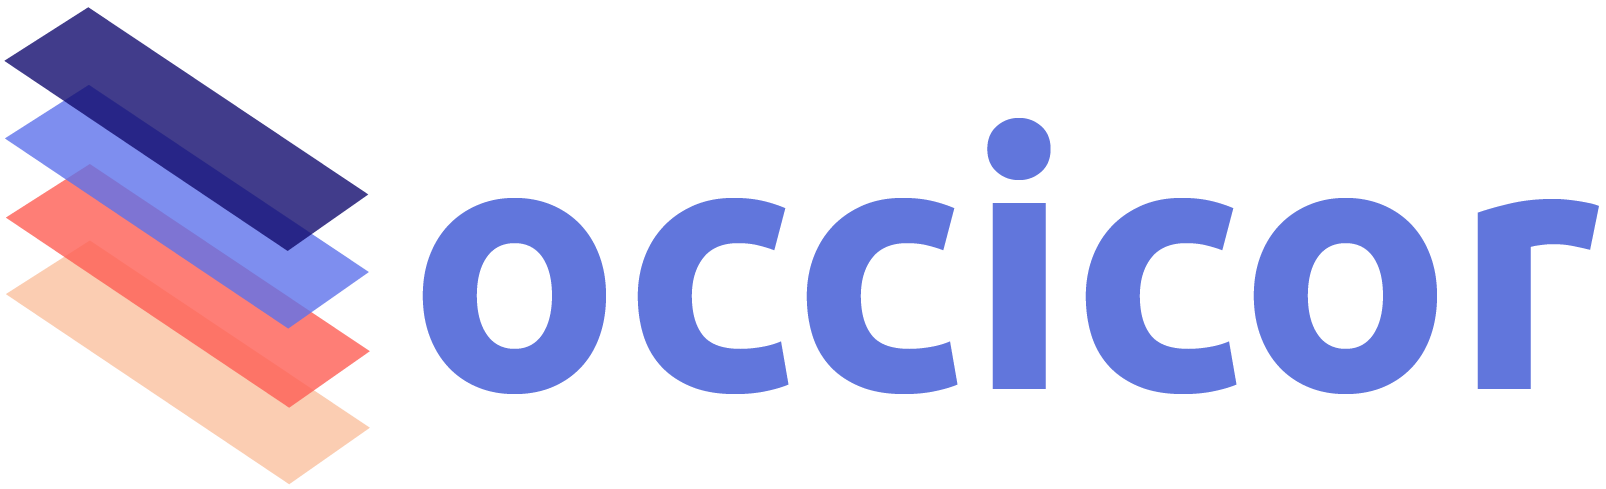 Occicor's Full Logo